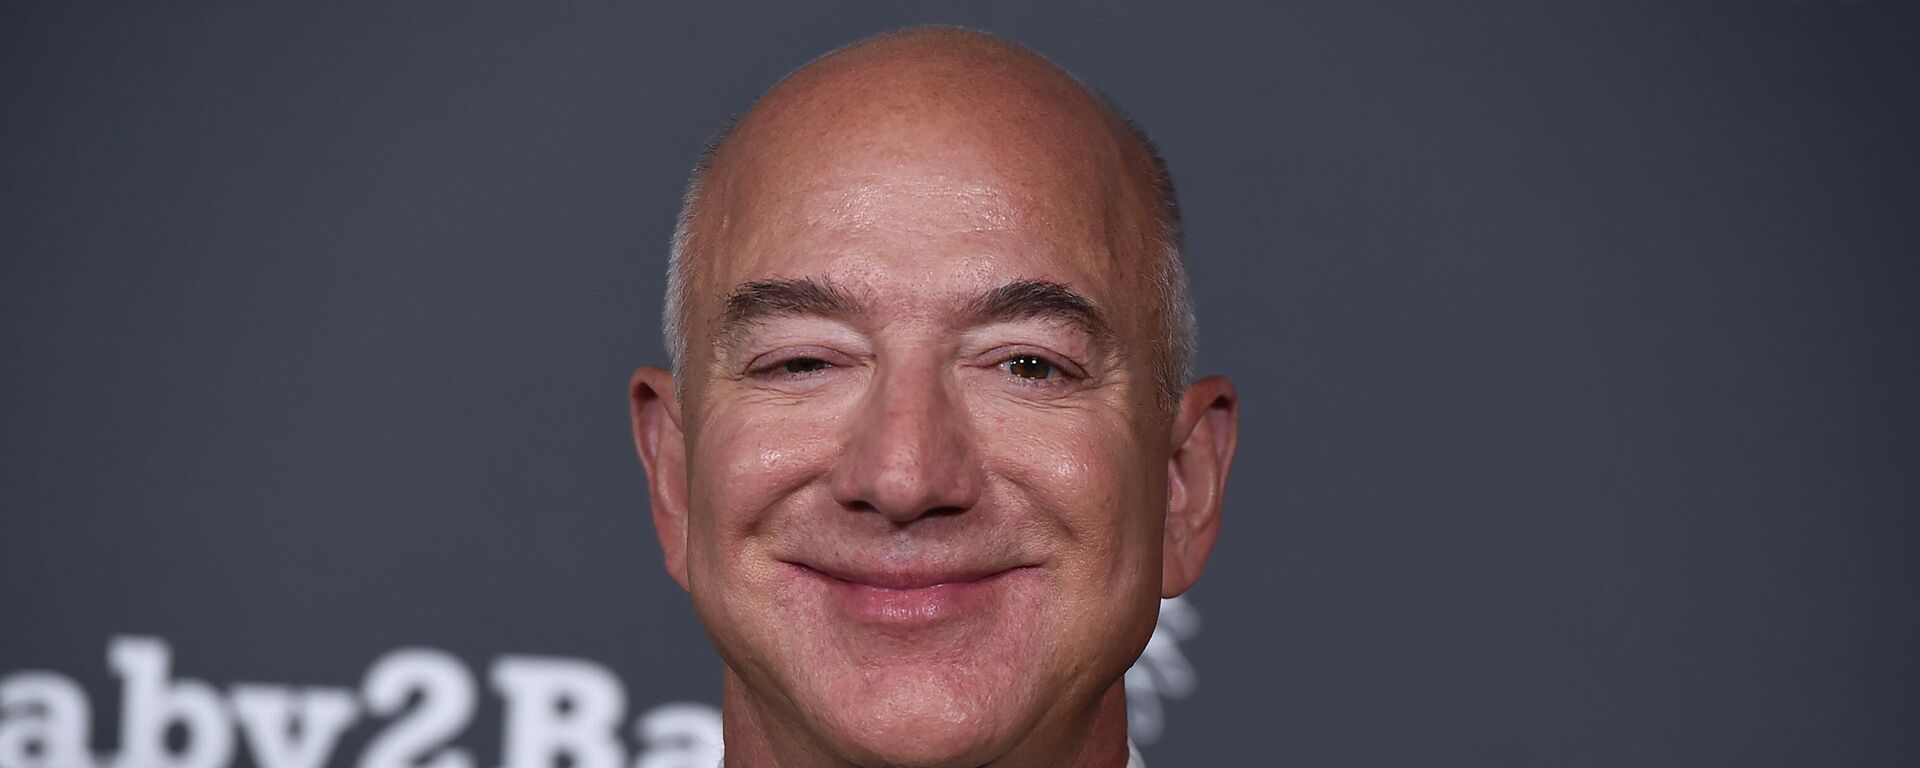 Jeff Bezos, fundador de Amazon - Sputnik Mundo, 1920, 21.11.2021